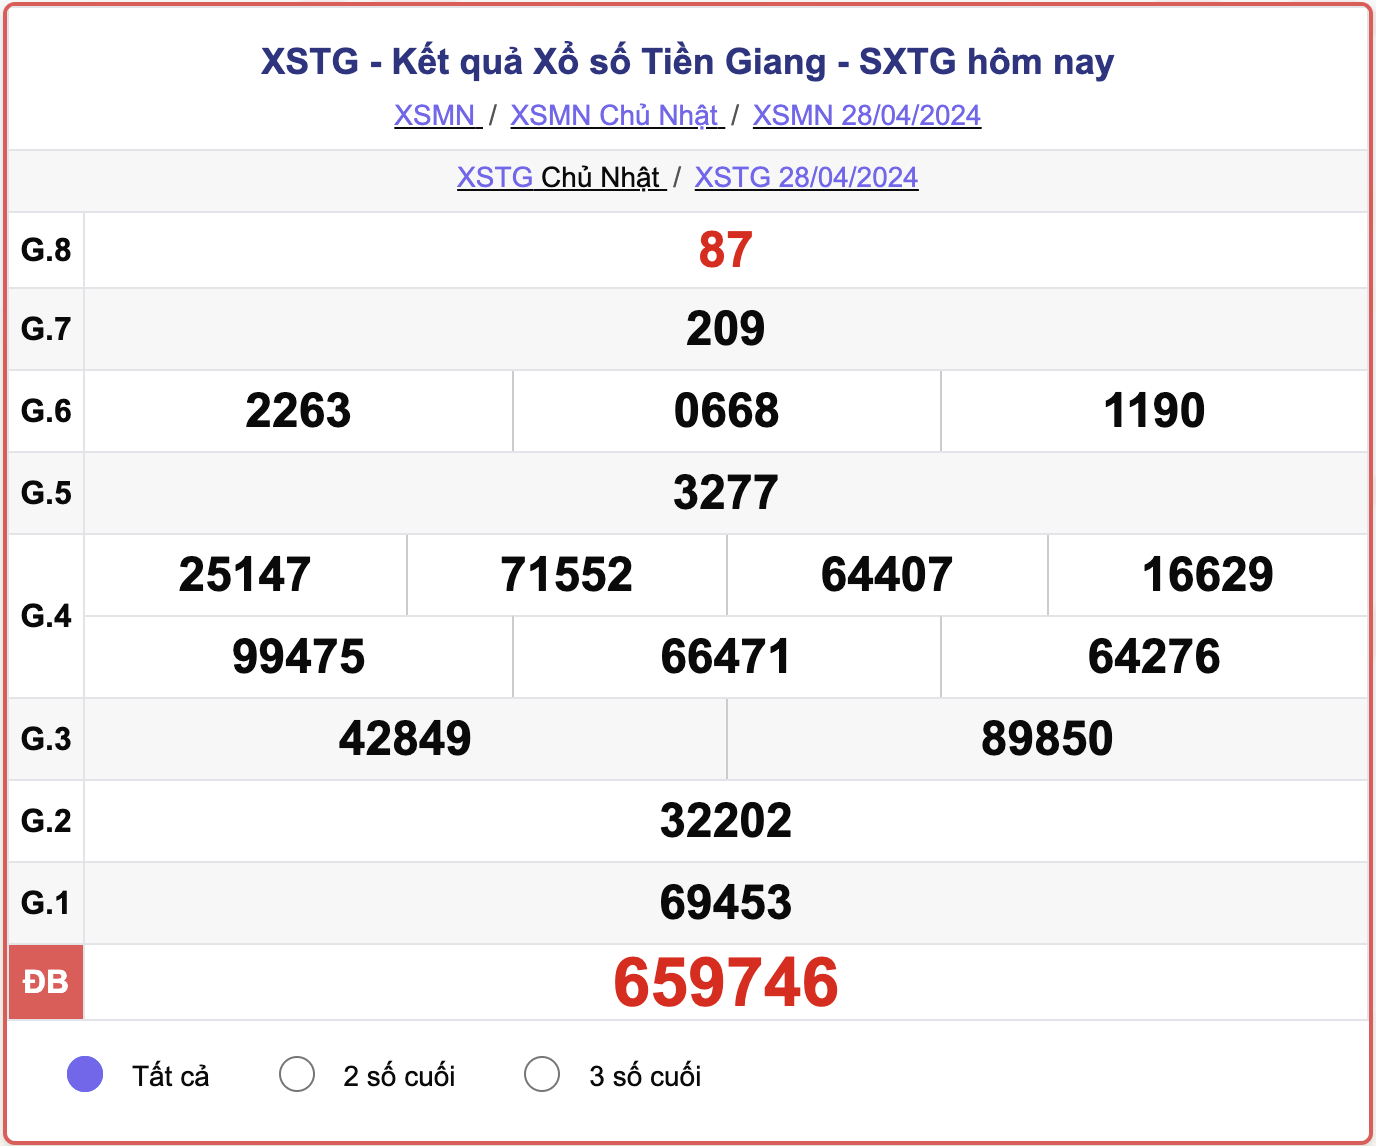 XSTG Chủ nhật, kết quả xổ số Tiền Giang ngày 28/4/2024.